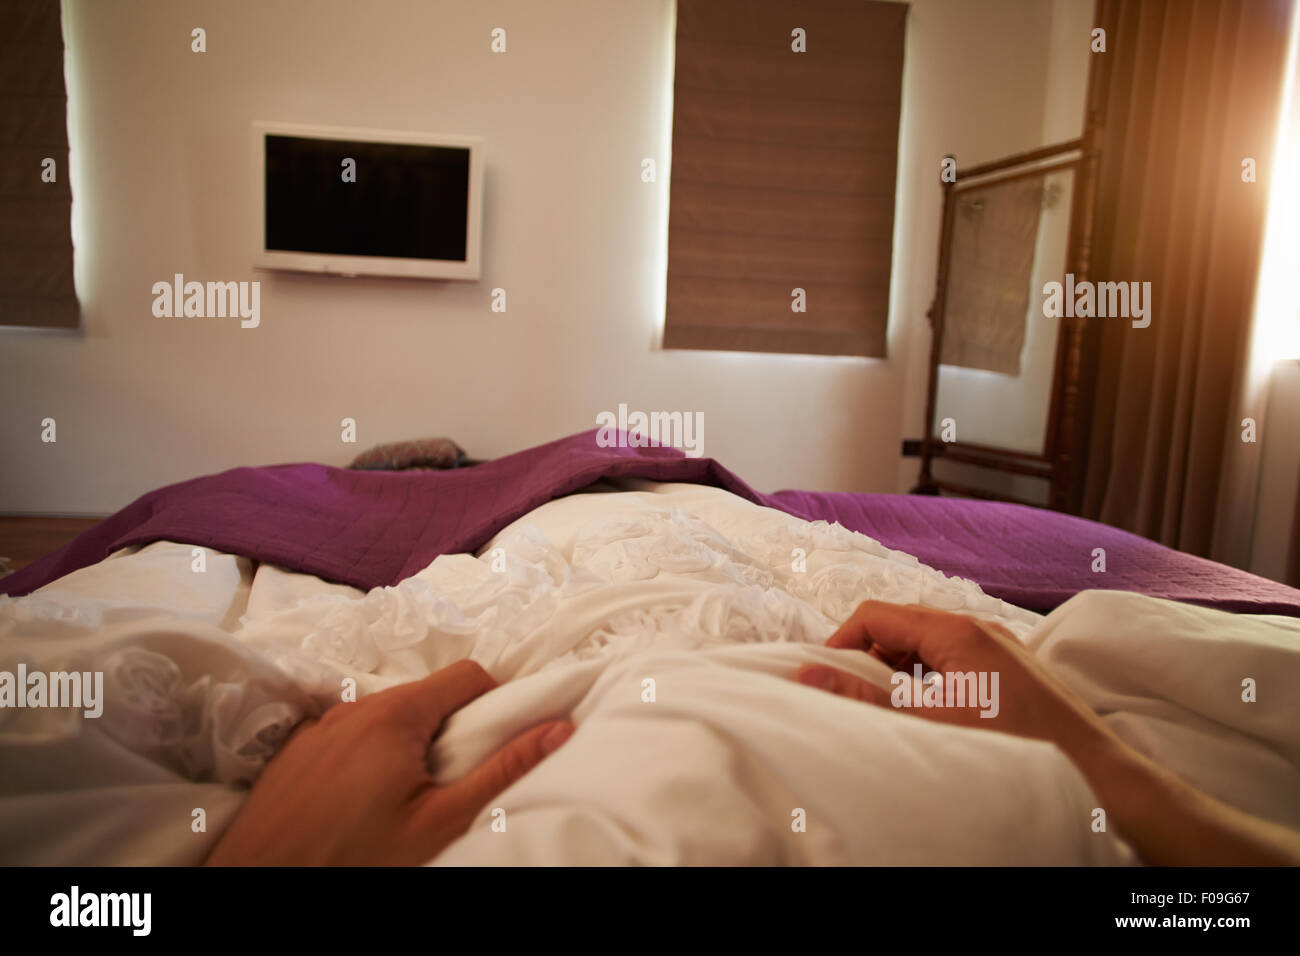 Punto di vista Immagine di persona che dorme nel letto Foto Stock